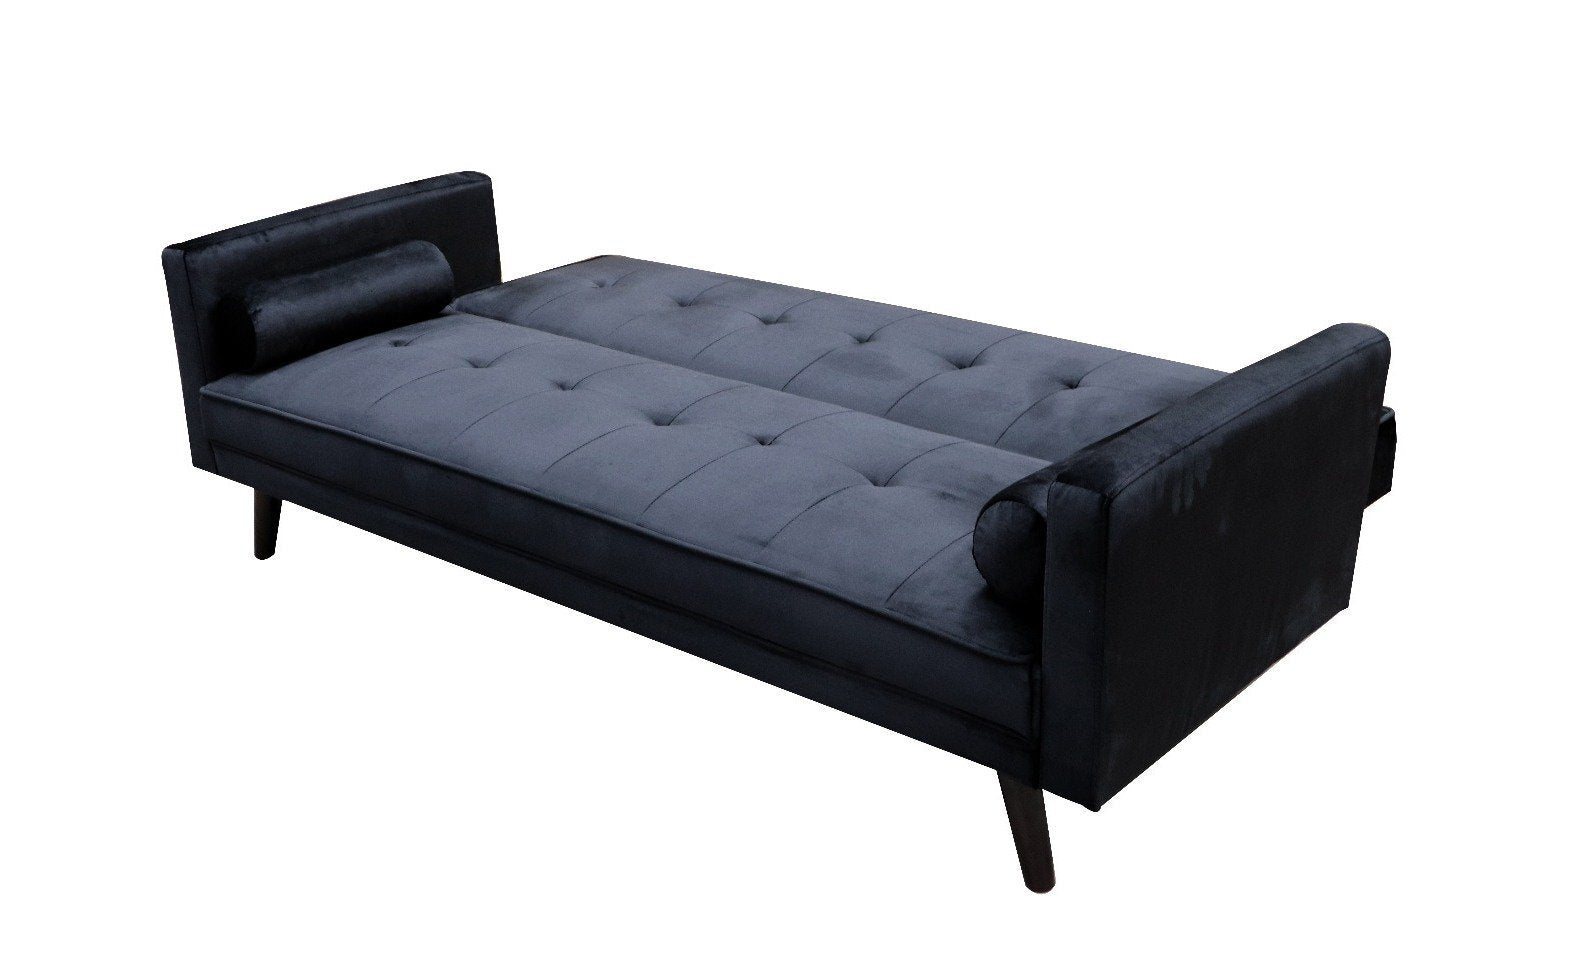 Sofa cama clic clac modelo River. Donde comprar Sofás cama baratos en stock.